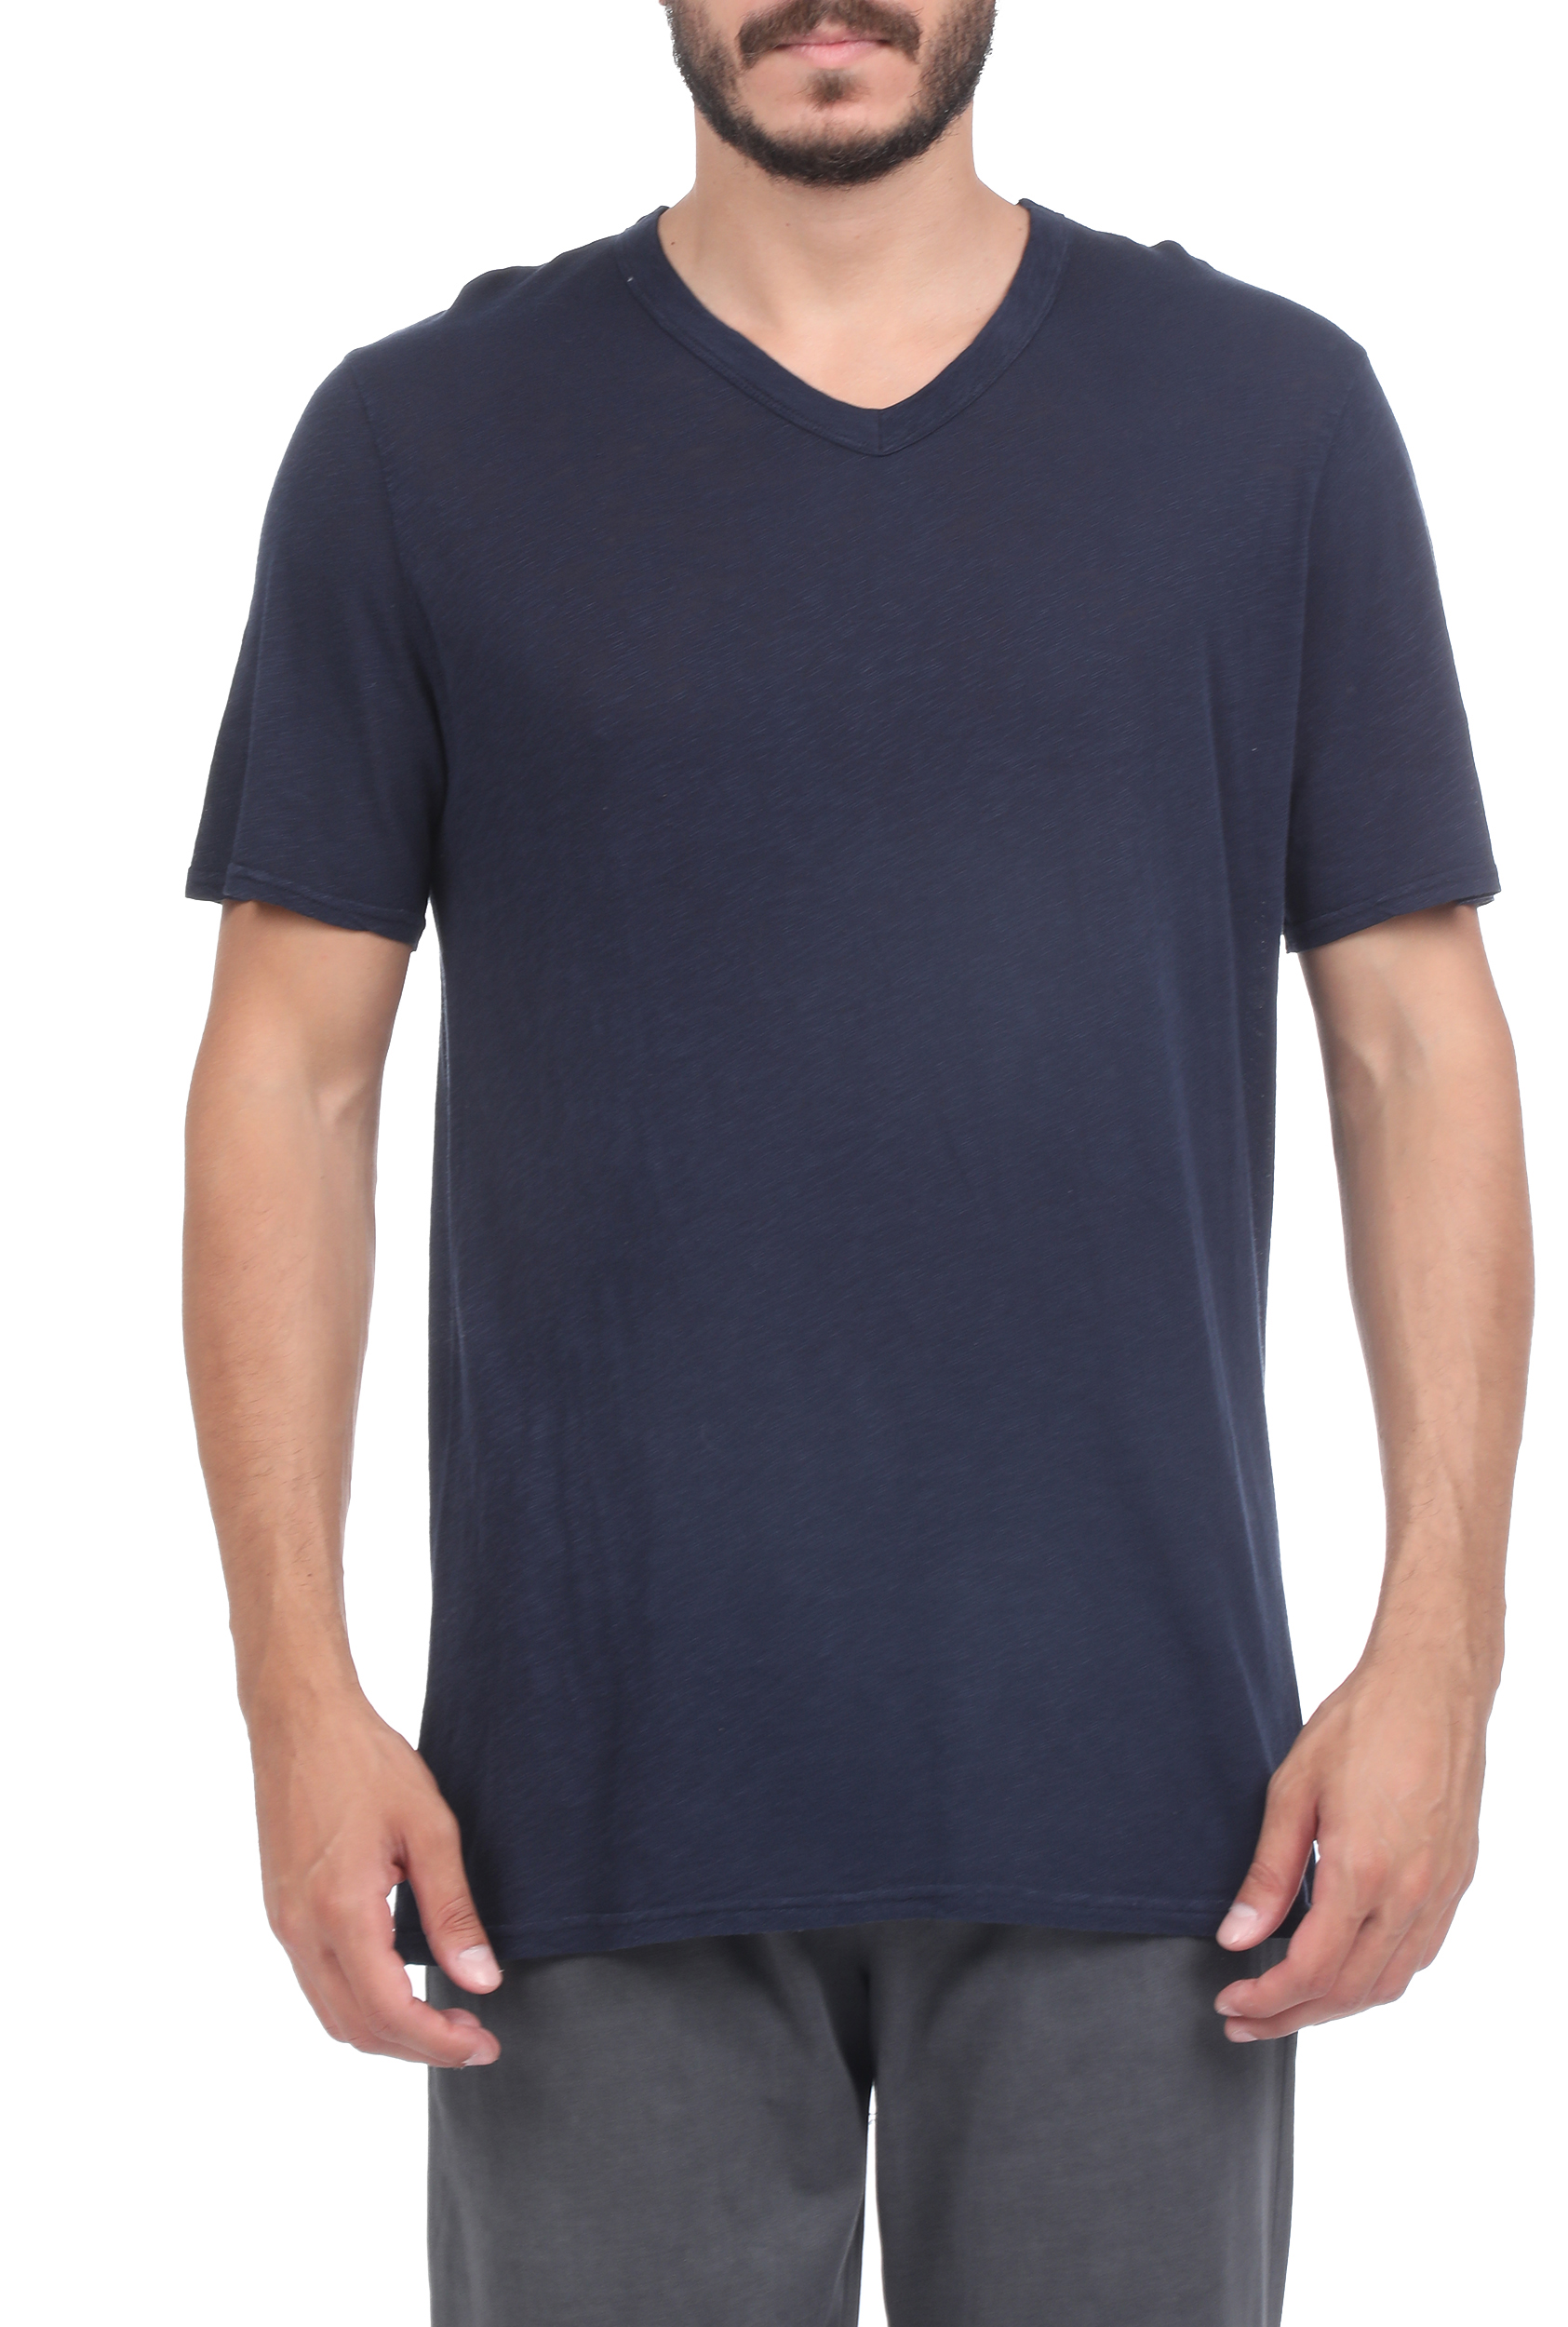 Ανδρικά/Ρούχα/Μπλούζες/Κοντομάνικες AMERICAN VINTAGE - Ανδρικό t-shirt AMERICAN VINTAGE μπλε